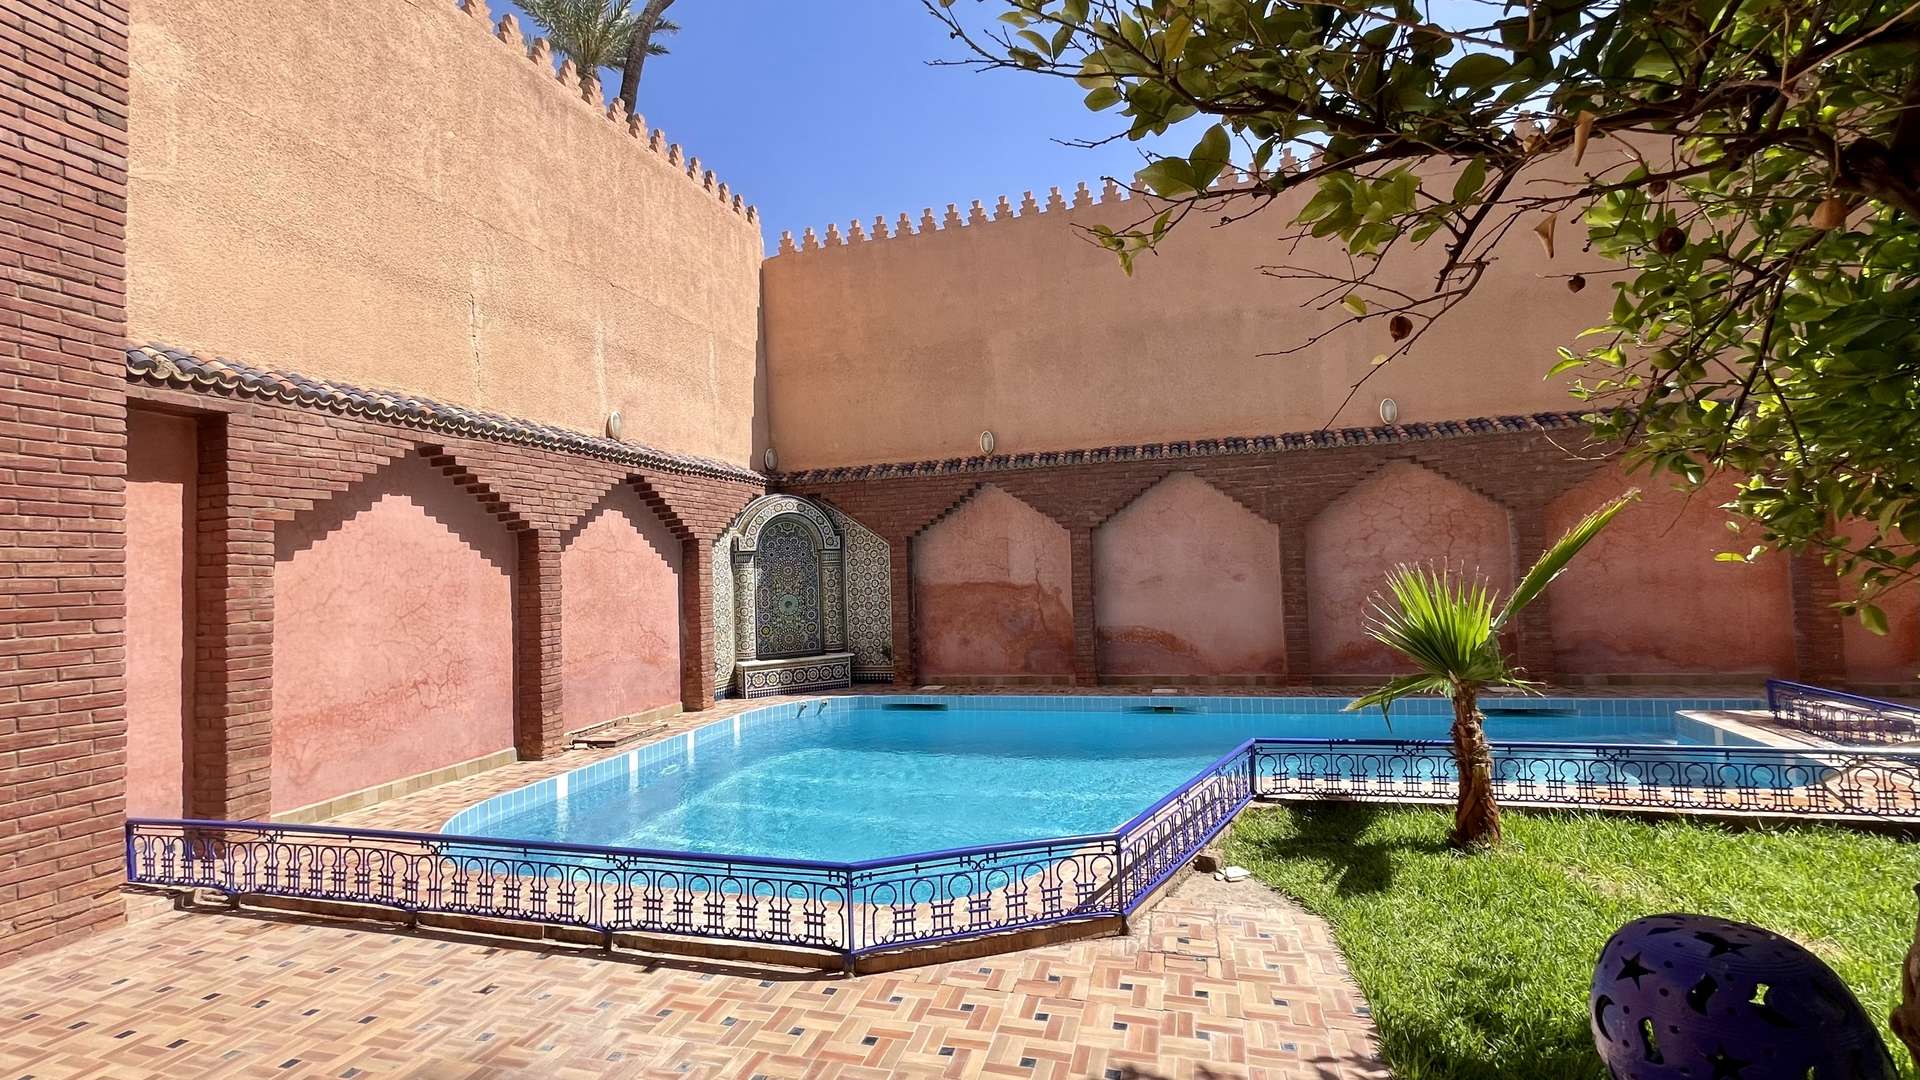 Vente,Villa,Très belle maison de ville avec piscine dans une rue très calme bien située dans le quartier de Semlalia ,Marrakech,Semlalia